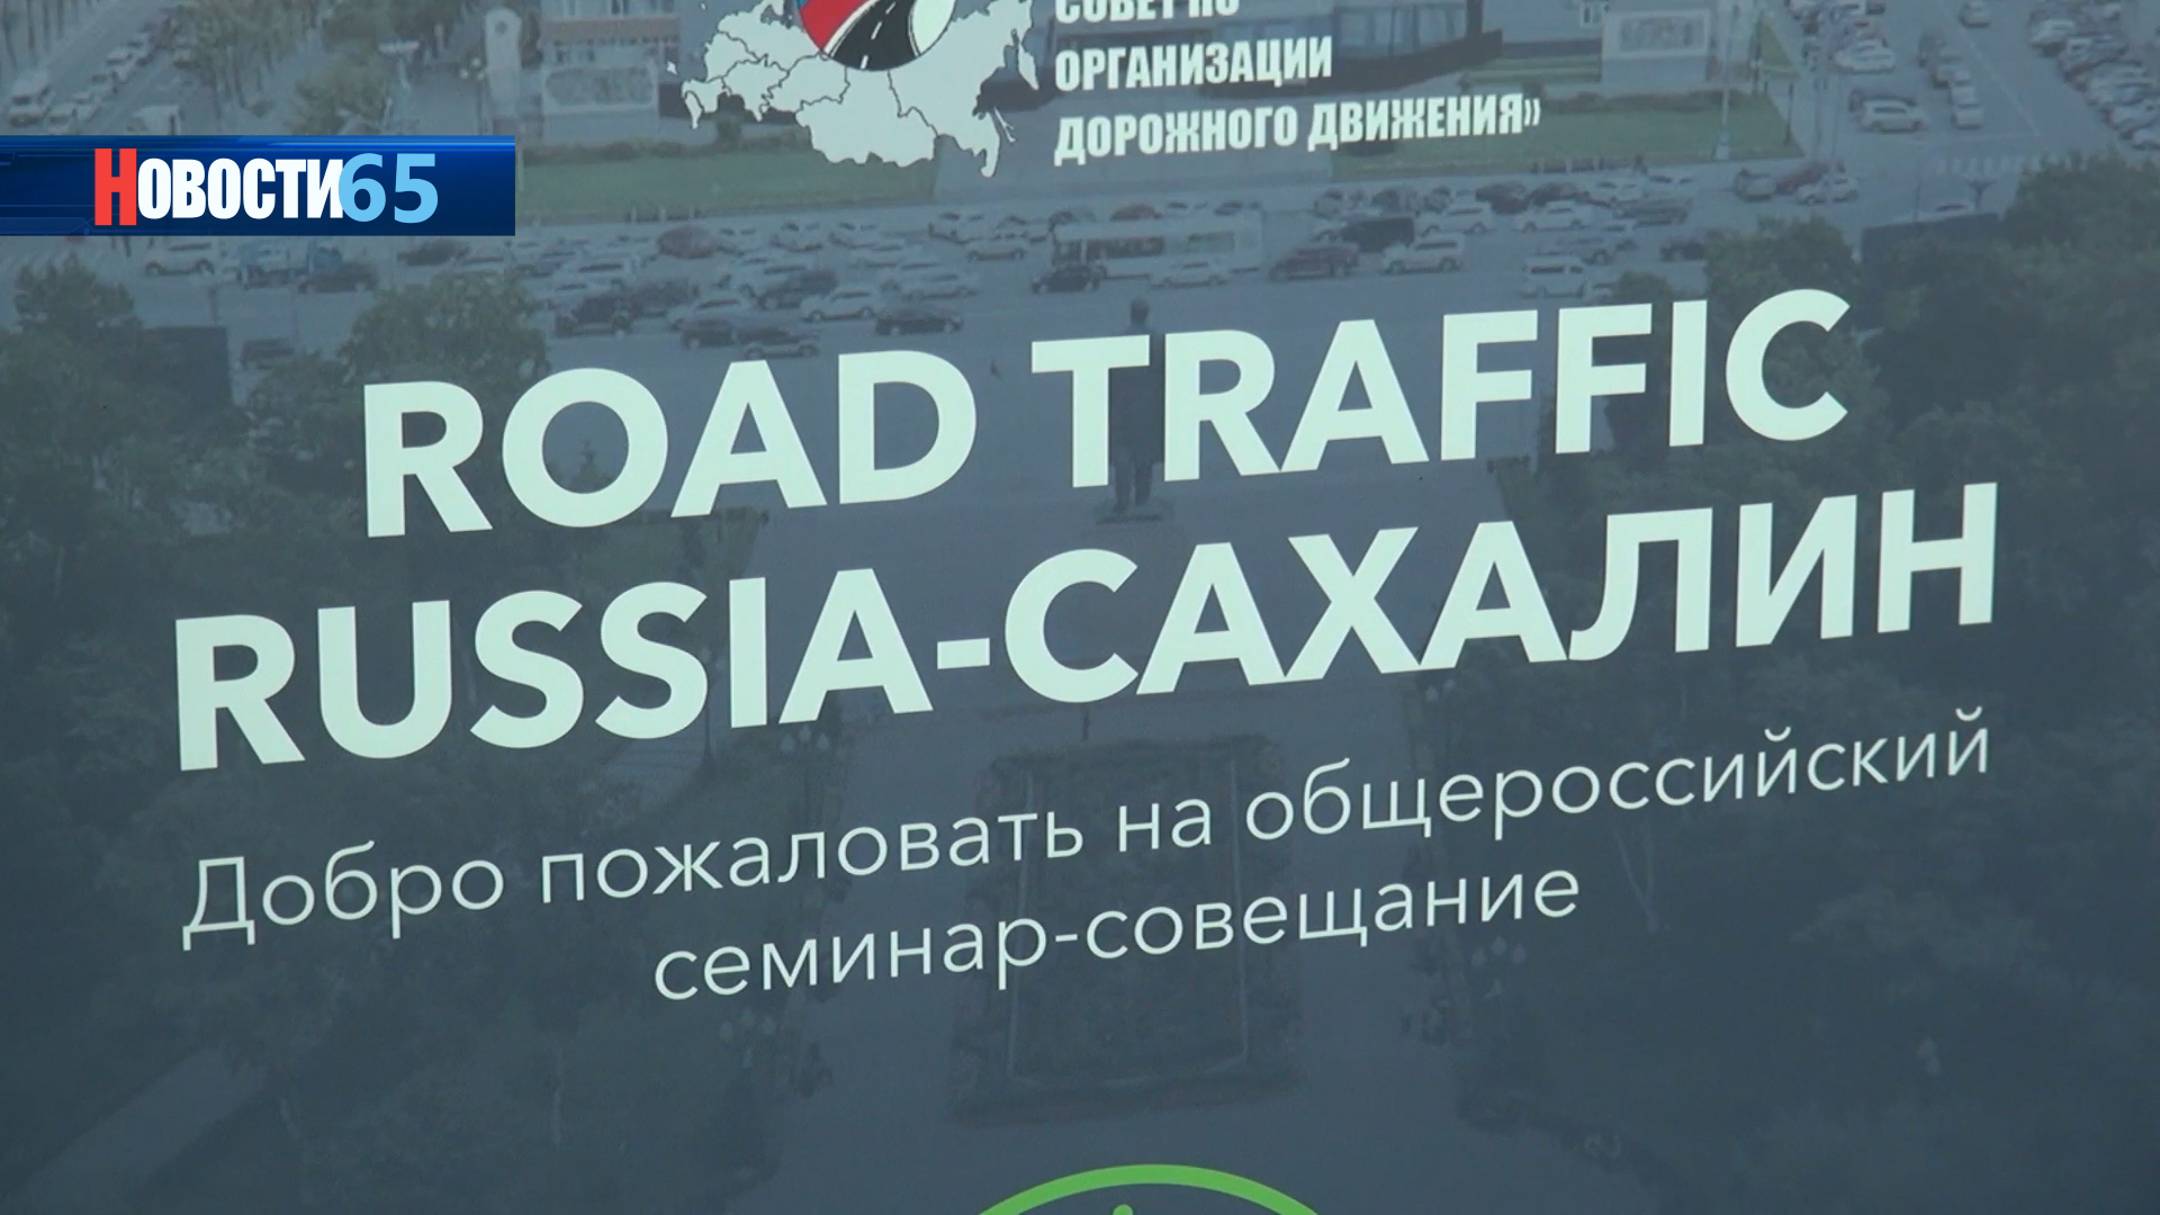 Смотри по сторонам. О безопасности дорожного движения поговорили в Южно-Сахалинске